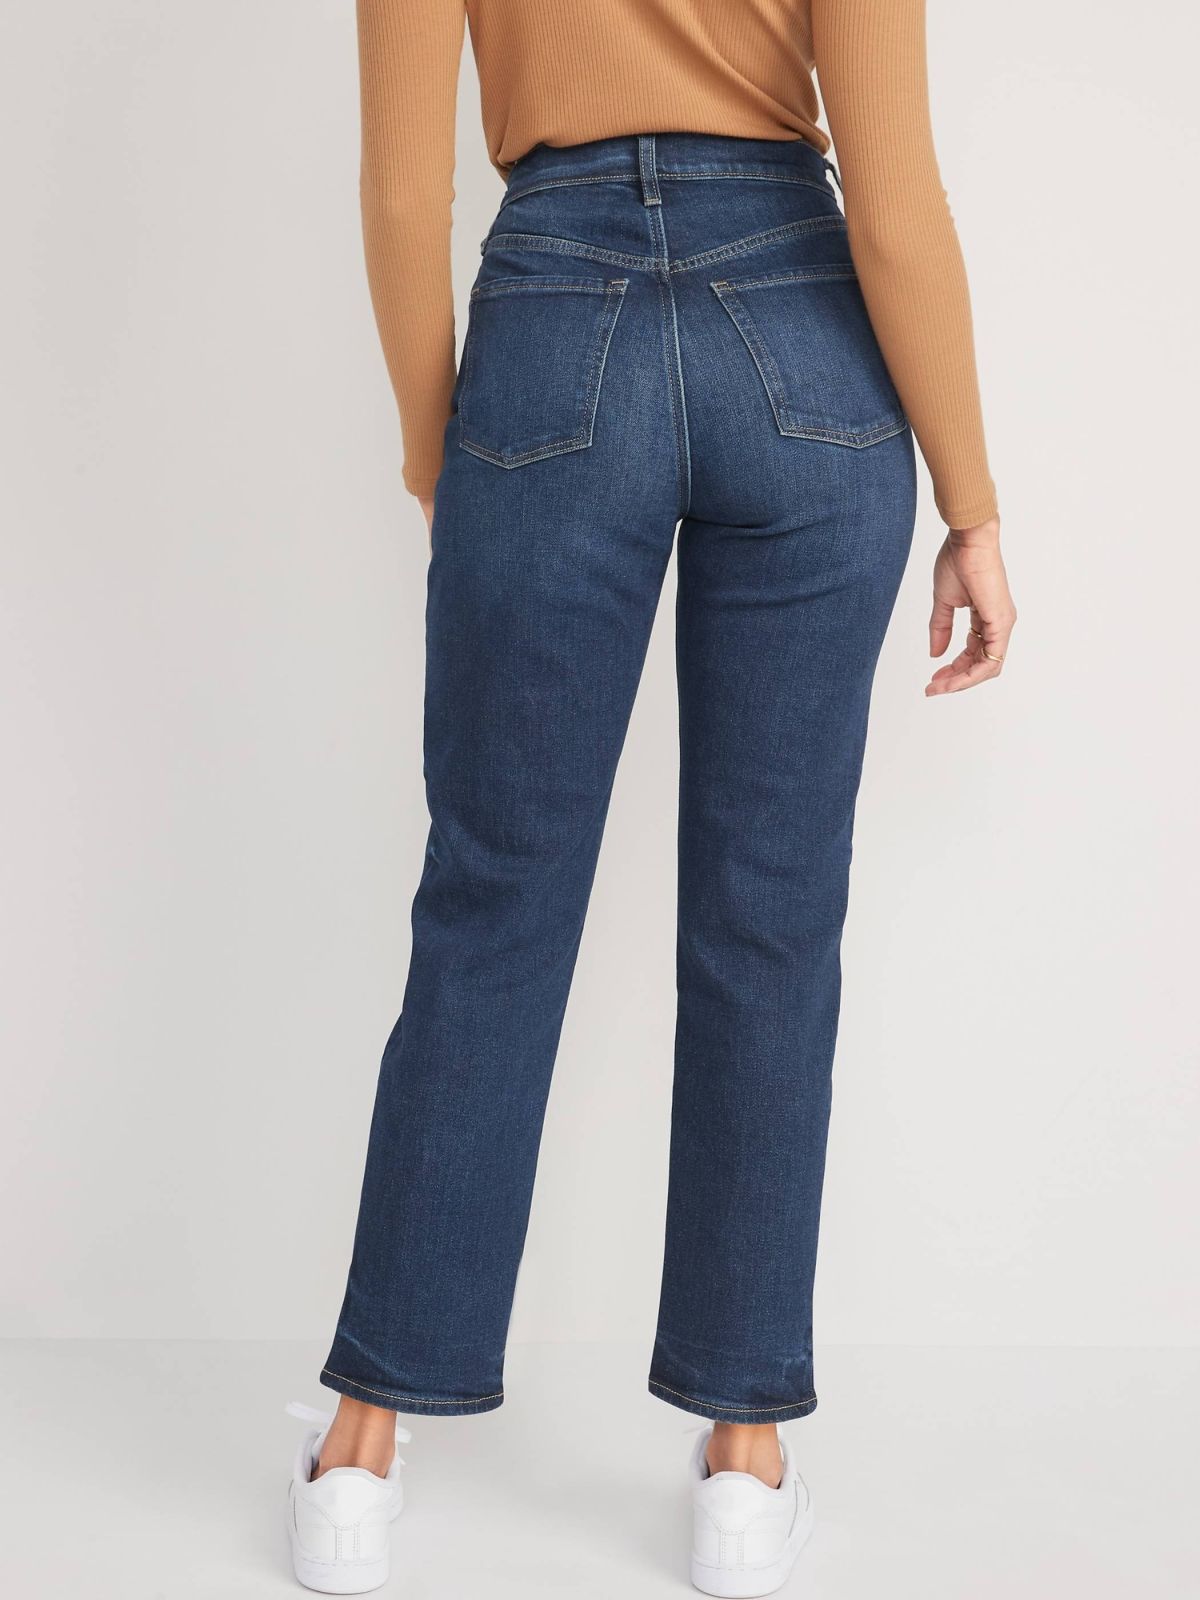  ג'ינס ארוך בגזרה אקסטרה גבוהה של OLD NAVY